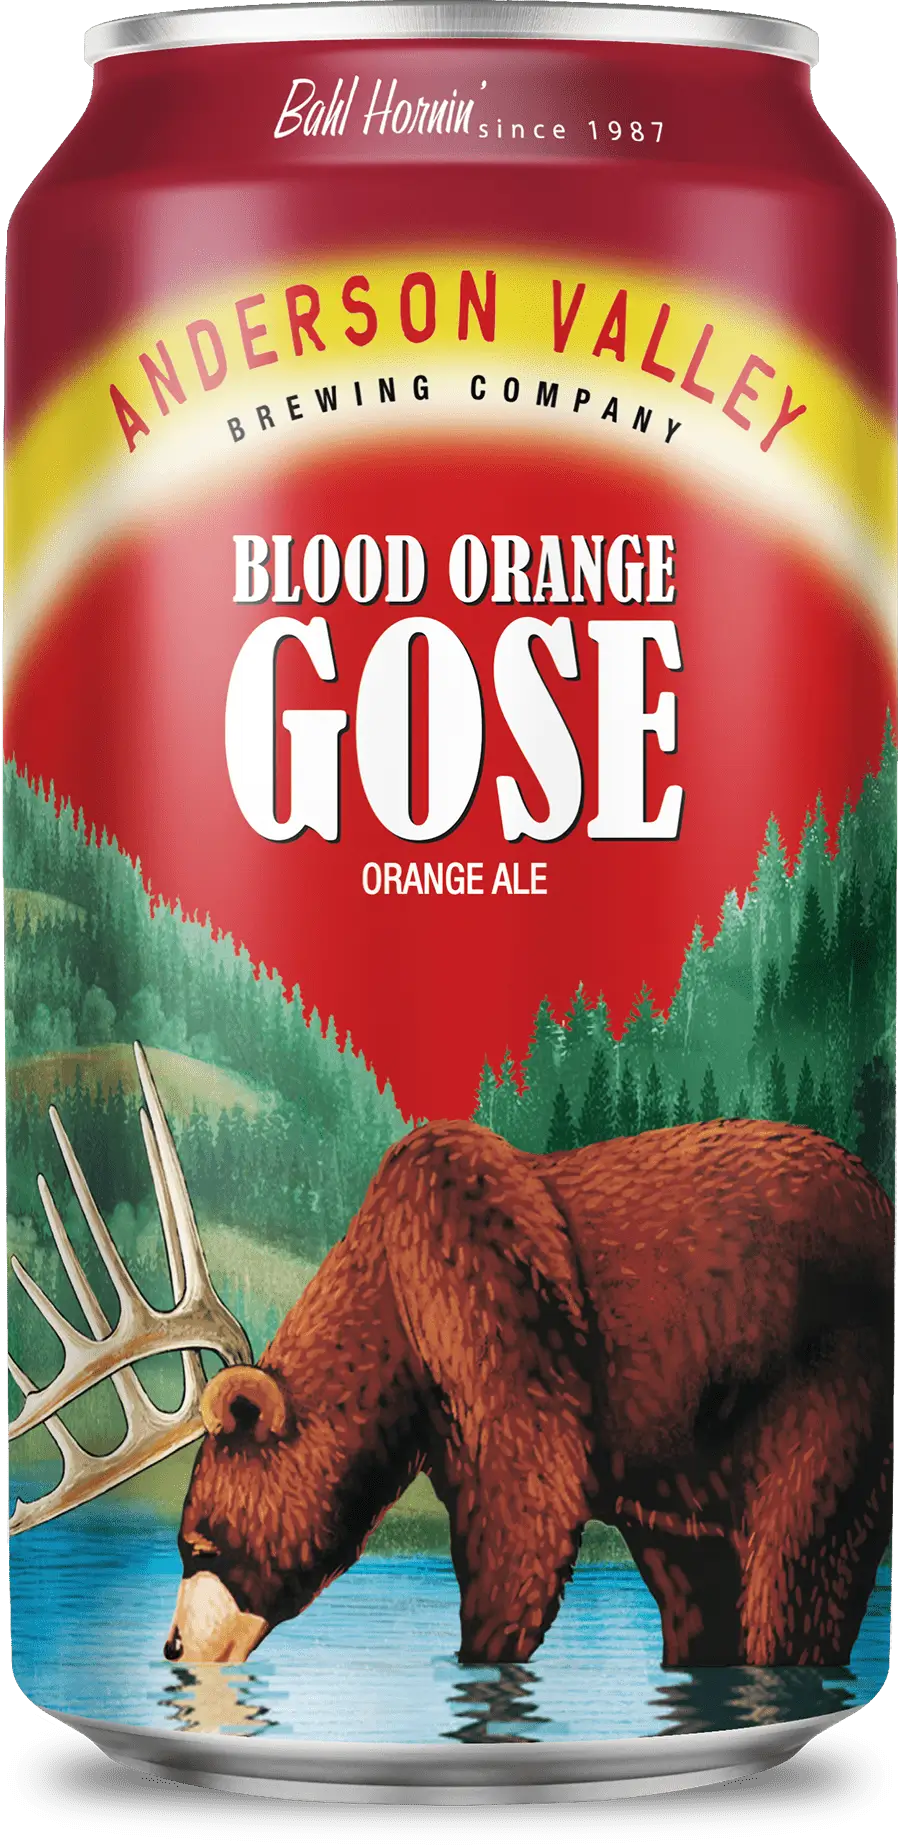 Blood Orange Gose